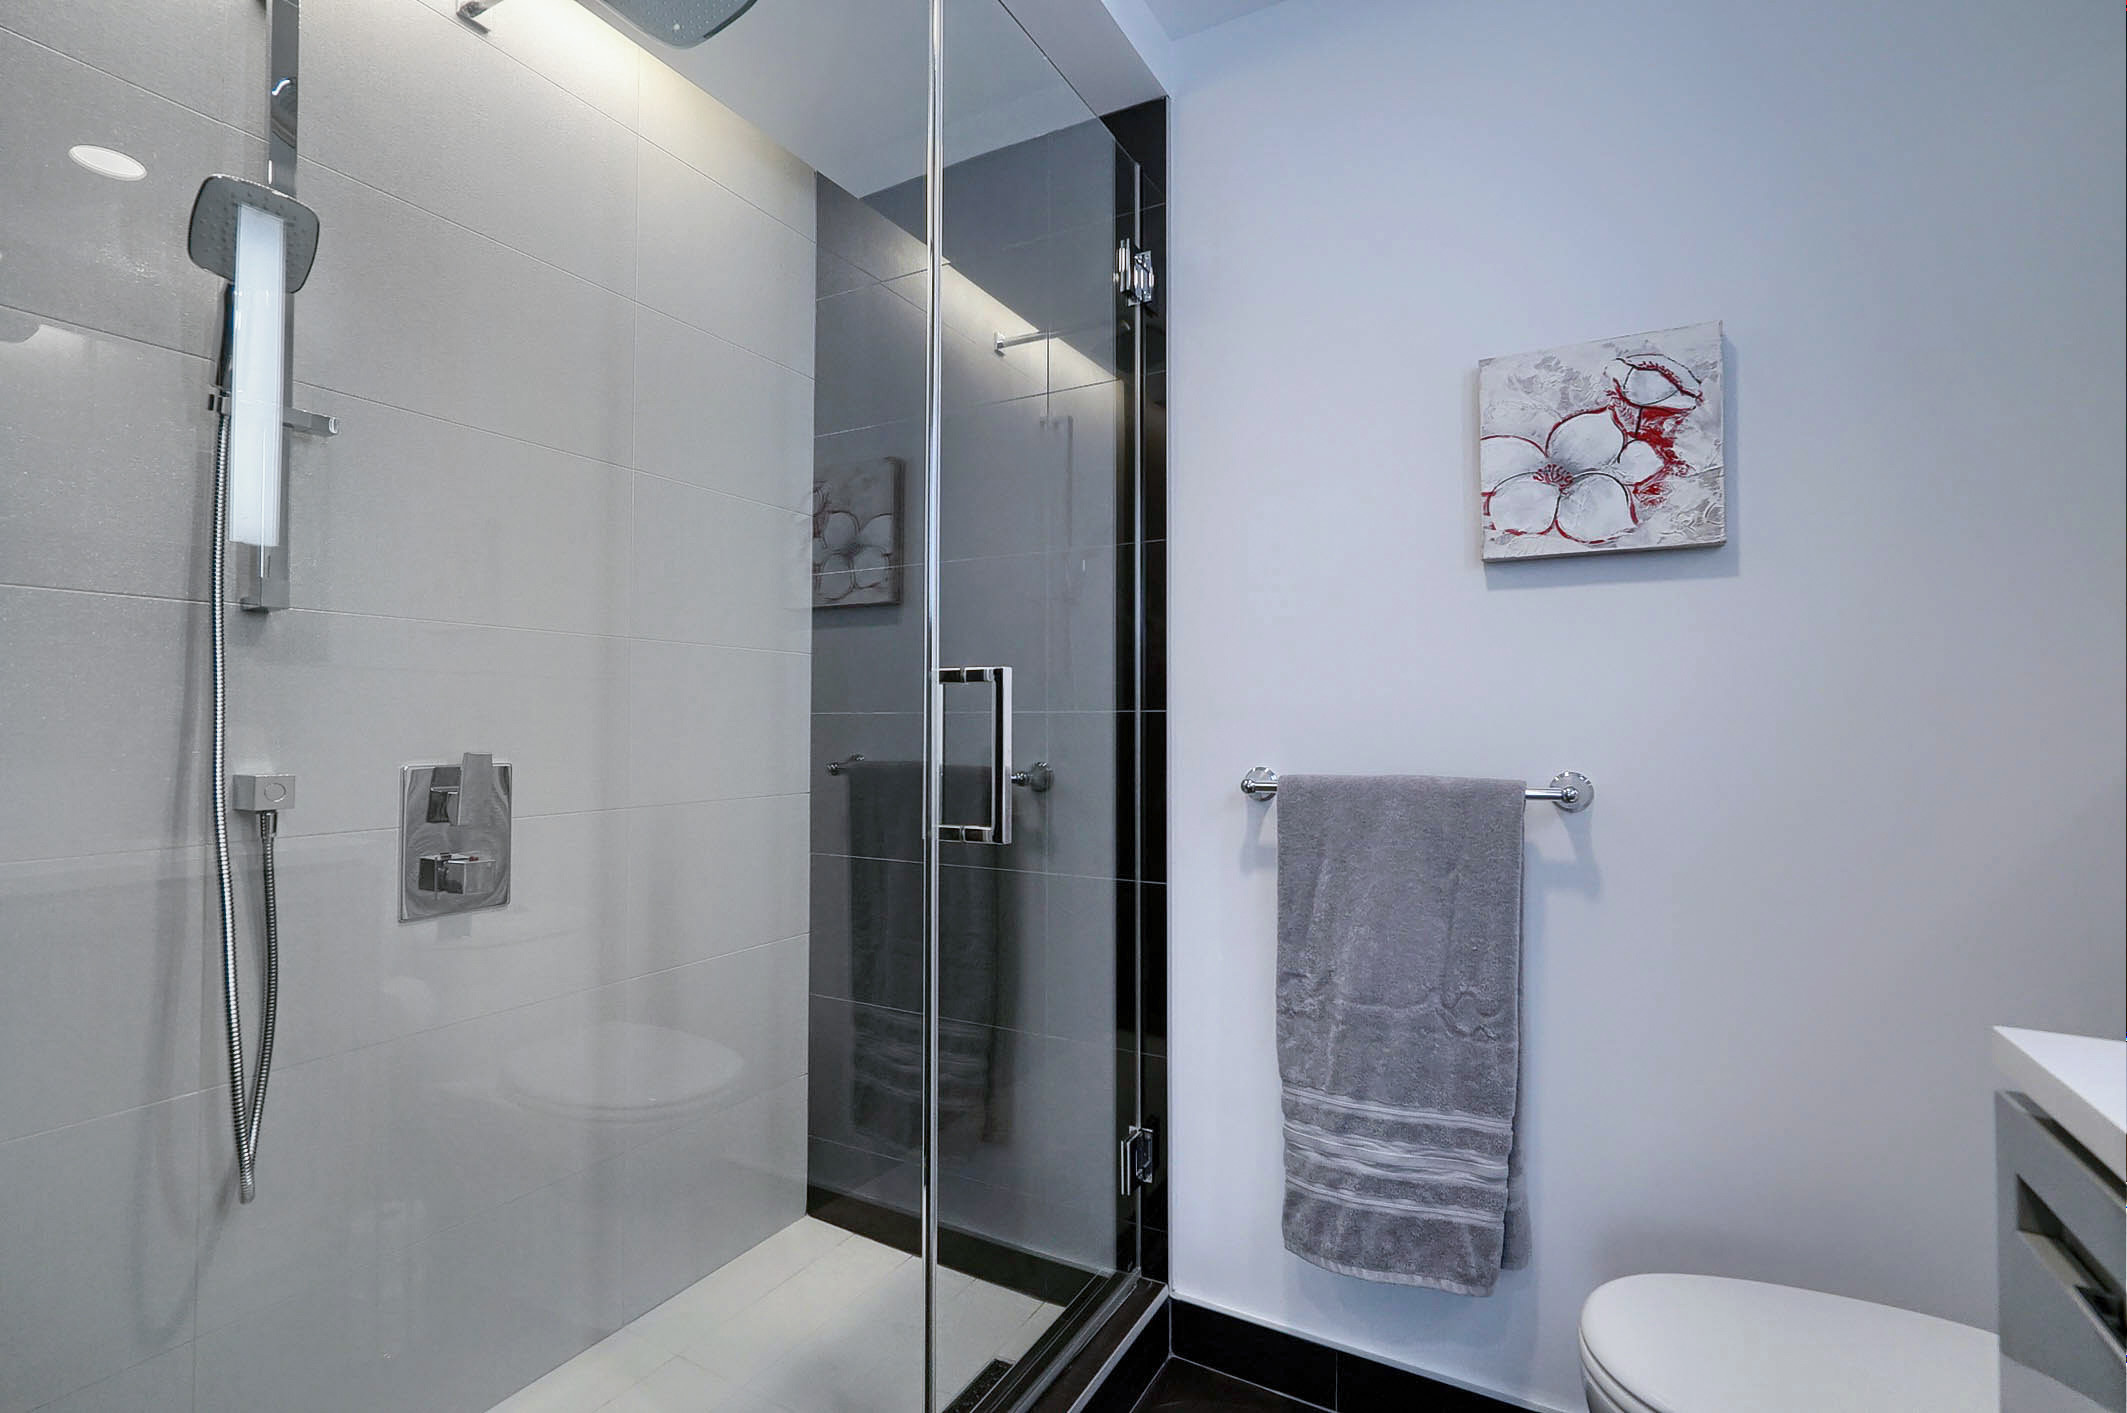 Vue en angle de la salle de bain montrant la douche. Douche en verre avec pomme de douche réglable dans ce condo meublé à louer à Montréal.